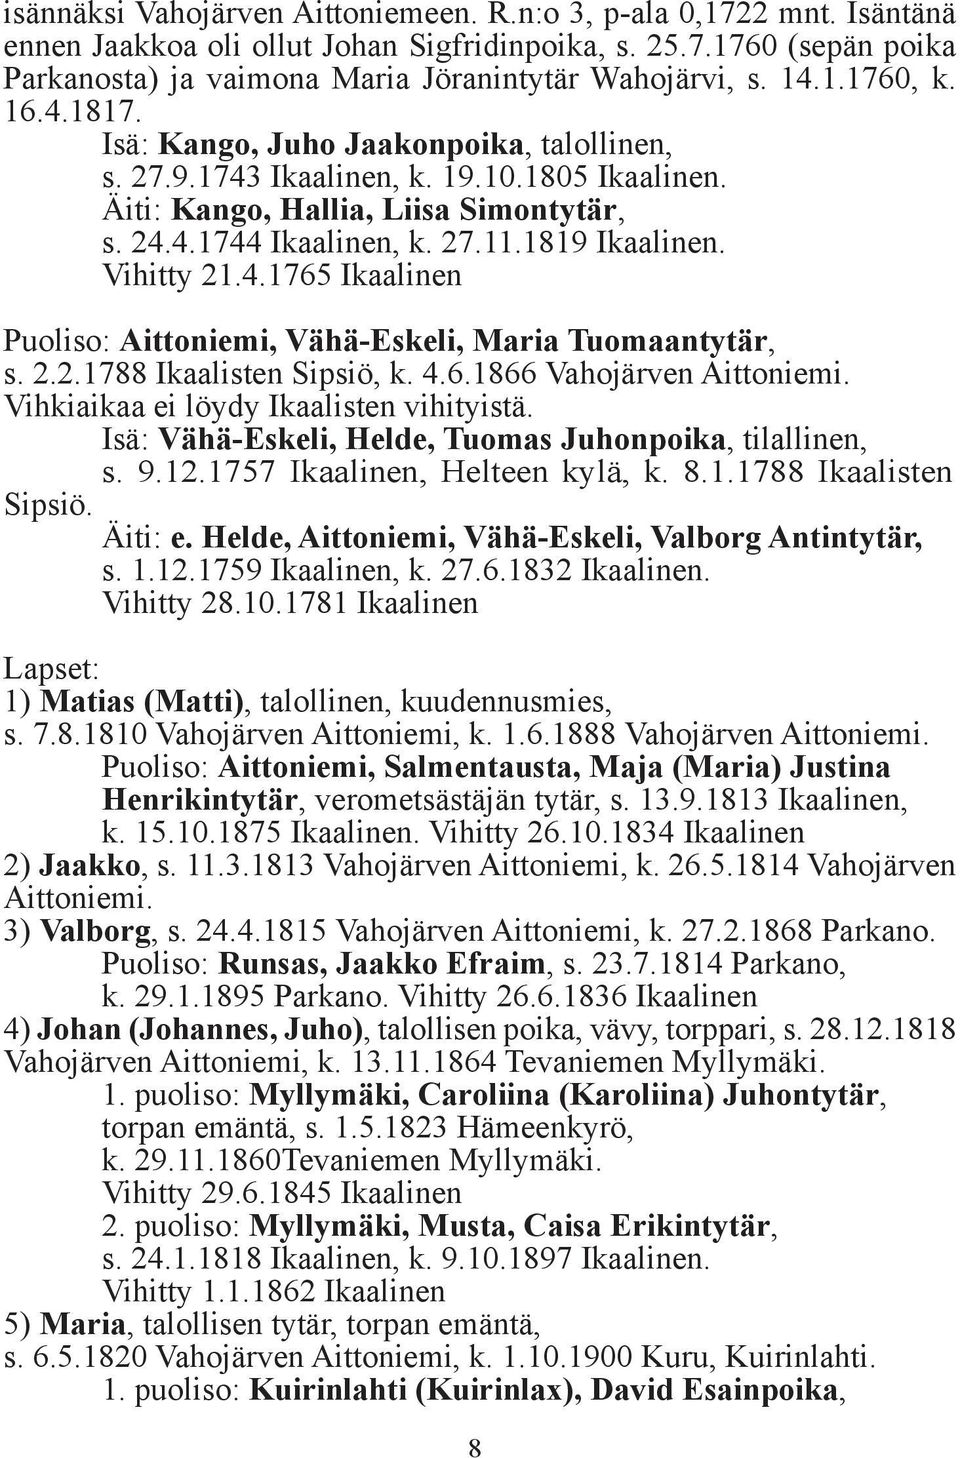 1819 Ikaalinen. Vihitty 21.4.1765 Ikaalinen Puoliso: Aittoniemi, Vähä-Eskeli, Maria Tuomaantytär, s. 2.2.1788 Ikaalisten Sipsiö, k. 4.6.1866 Vahojärven Aittoniemi.